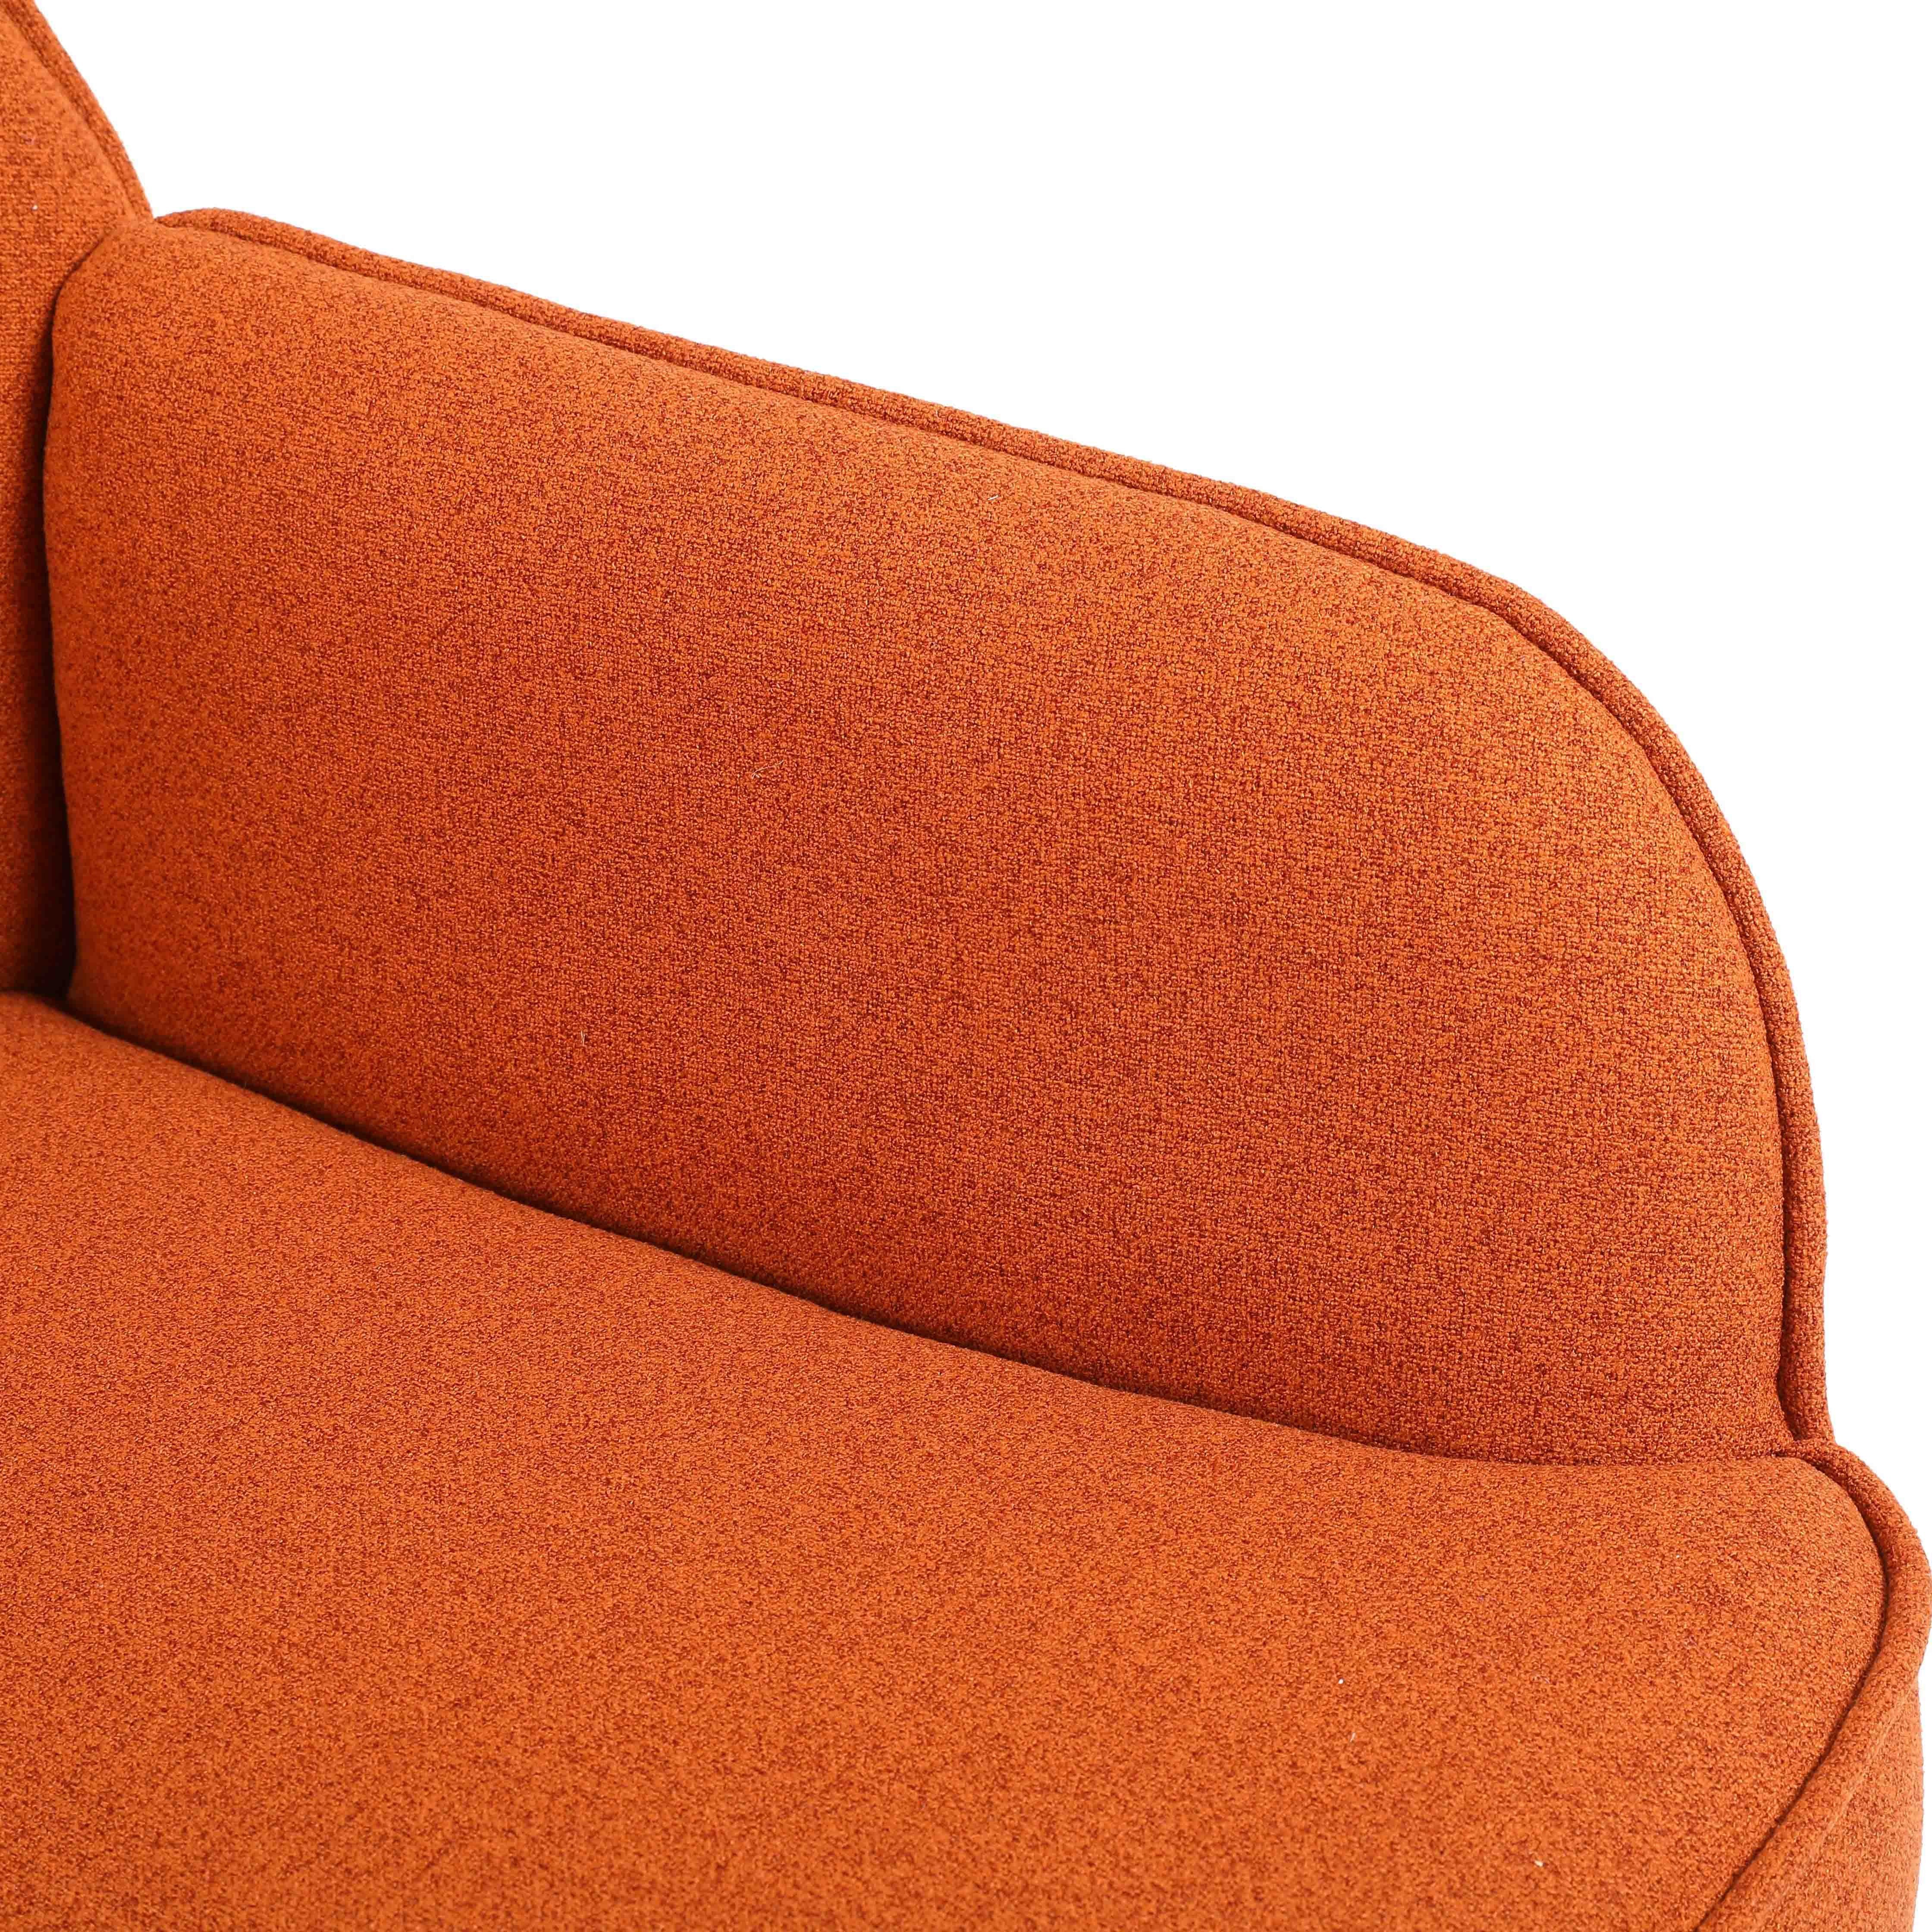 REDOM Loungesessel Relaxsessel Einzelsessel, Polstersessel, Einzelsofa Metallbeinen orange Freizeit mit Stuhl Gepolsterte Kaffee Stuhl), (Büro Fernsehsessel